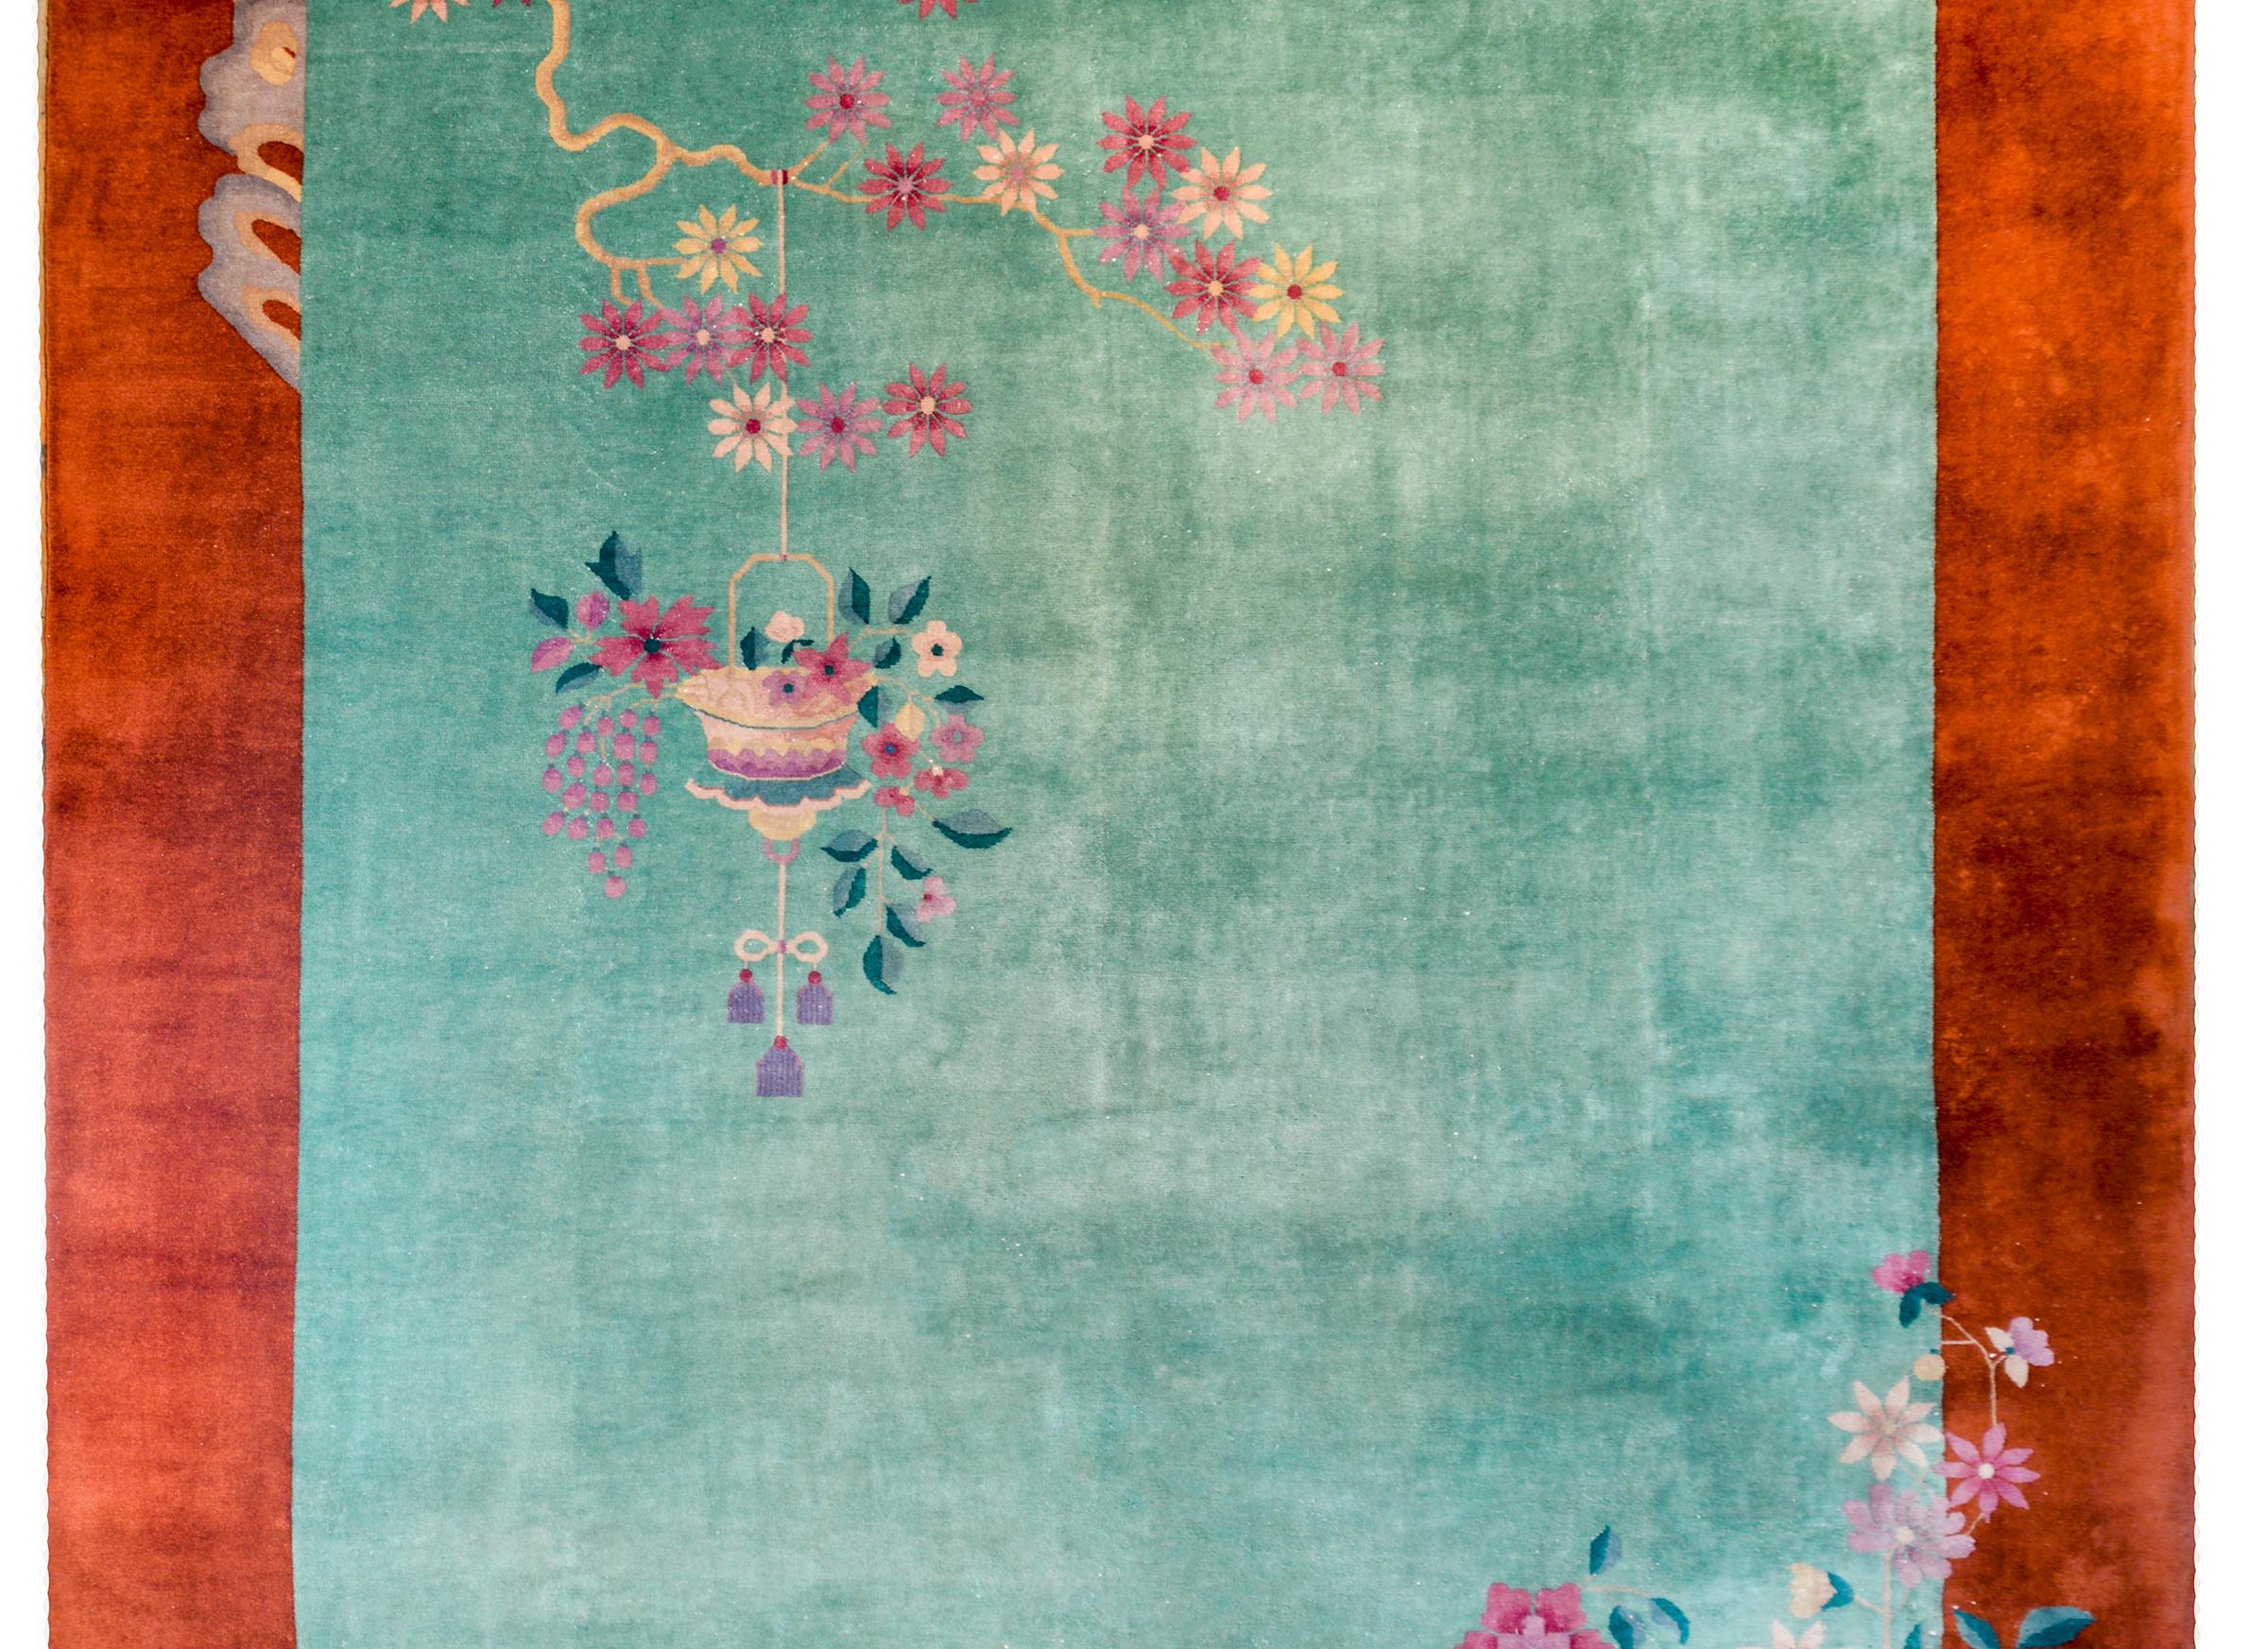 Magnifique tapis chinois Art déco du début du 20e siècle avec un magnifique champ vert mousse de mer entouré d'une large bordure orange rouille. Une pivoine en pot vit dans un coin tandis qu'une branche de prunus à fleurs tordue et noueuse avec un